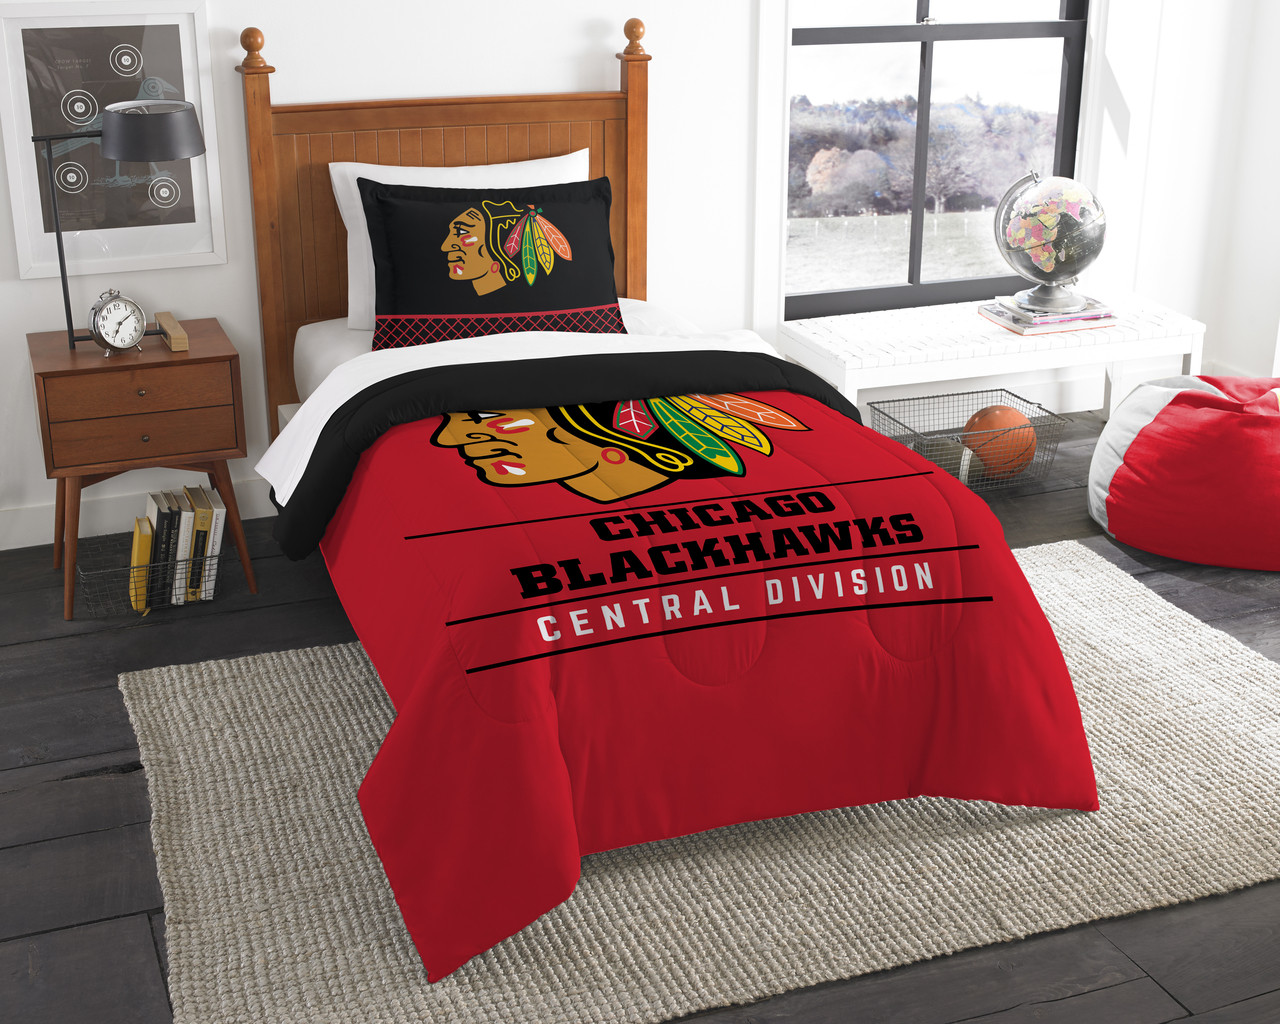 New York Rangers NHL Officially Licensed Comforter Set